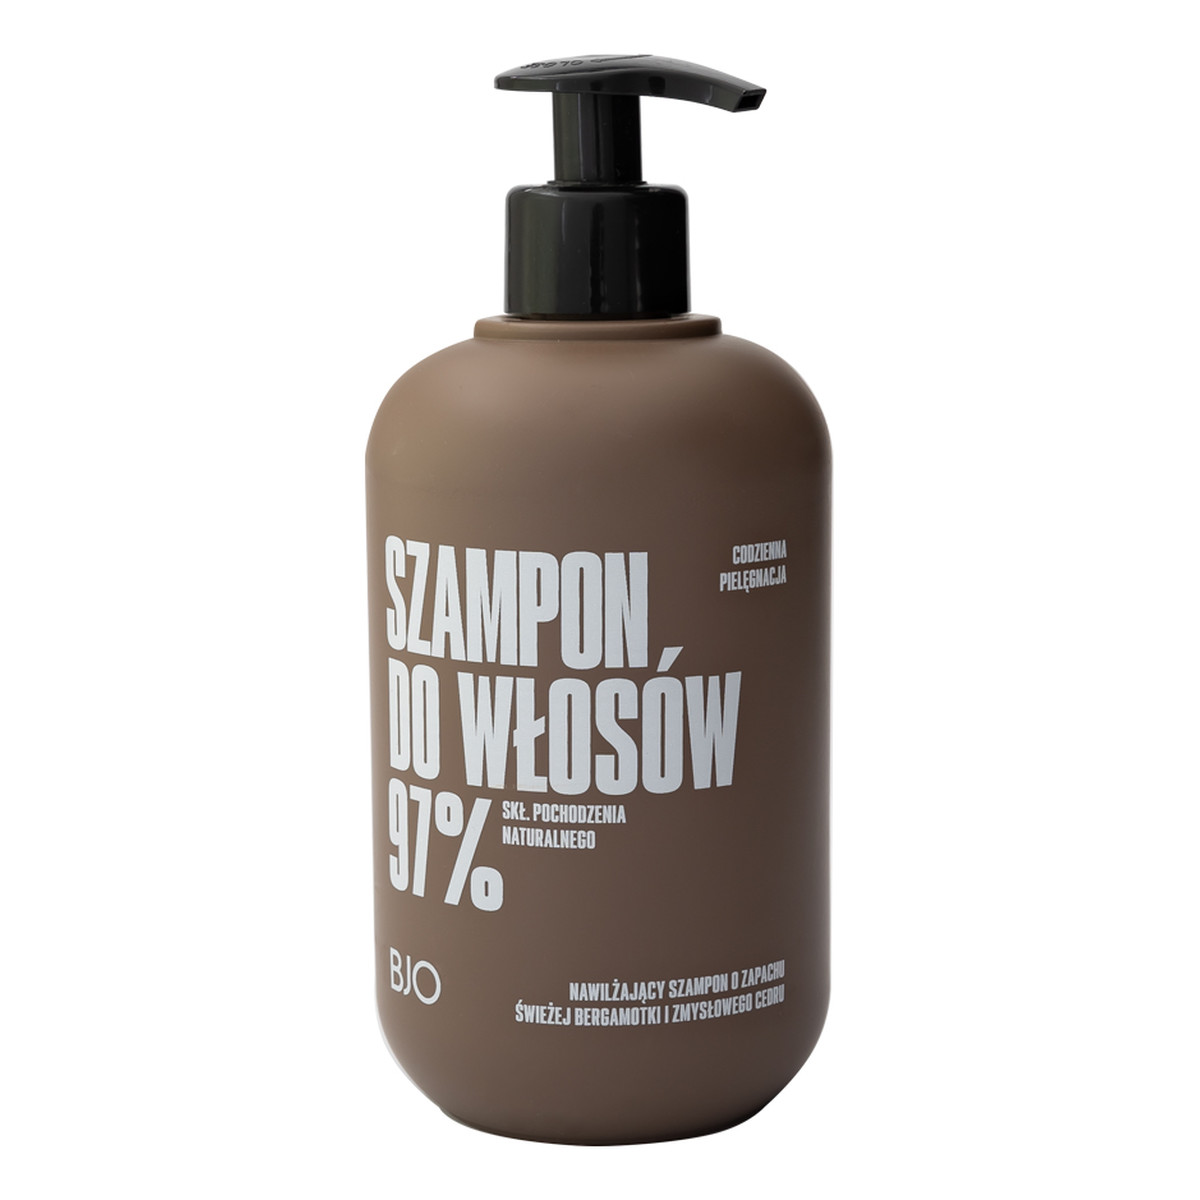 Bjo Nawilżający szampon o zapachu świeżej bergamotki i zmysłowego cedru 500ml